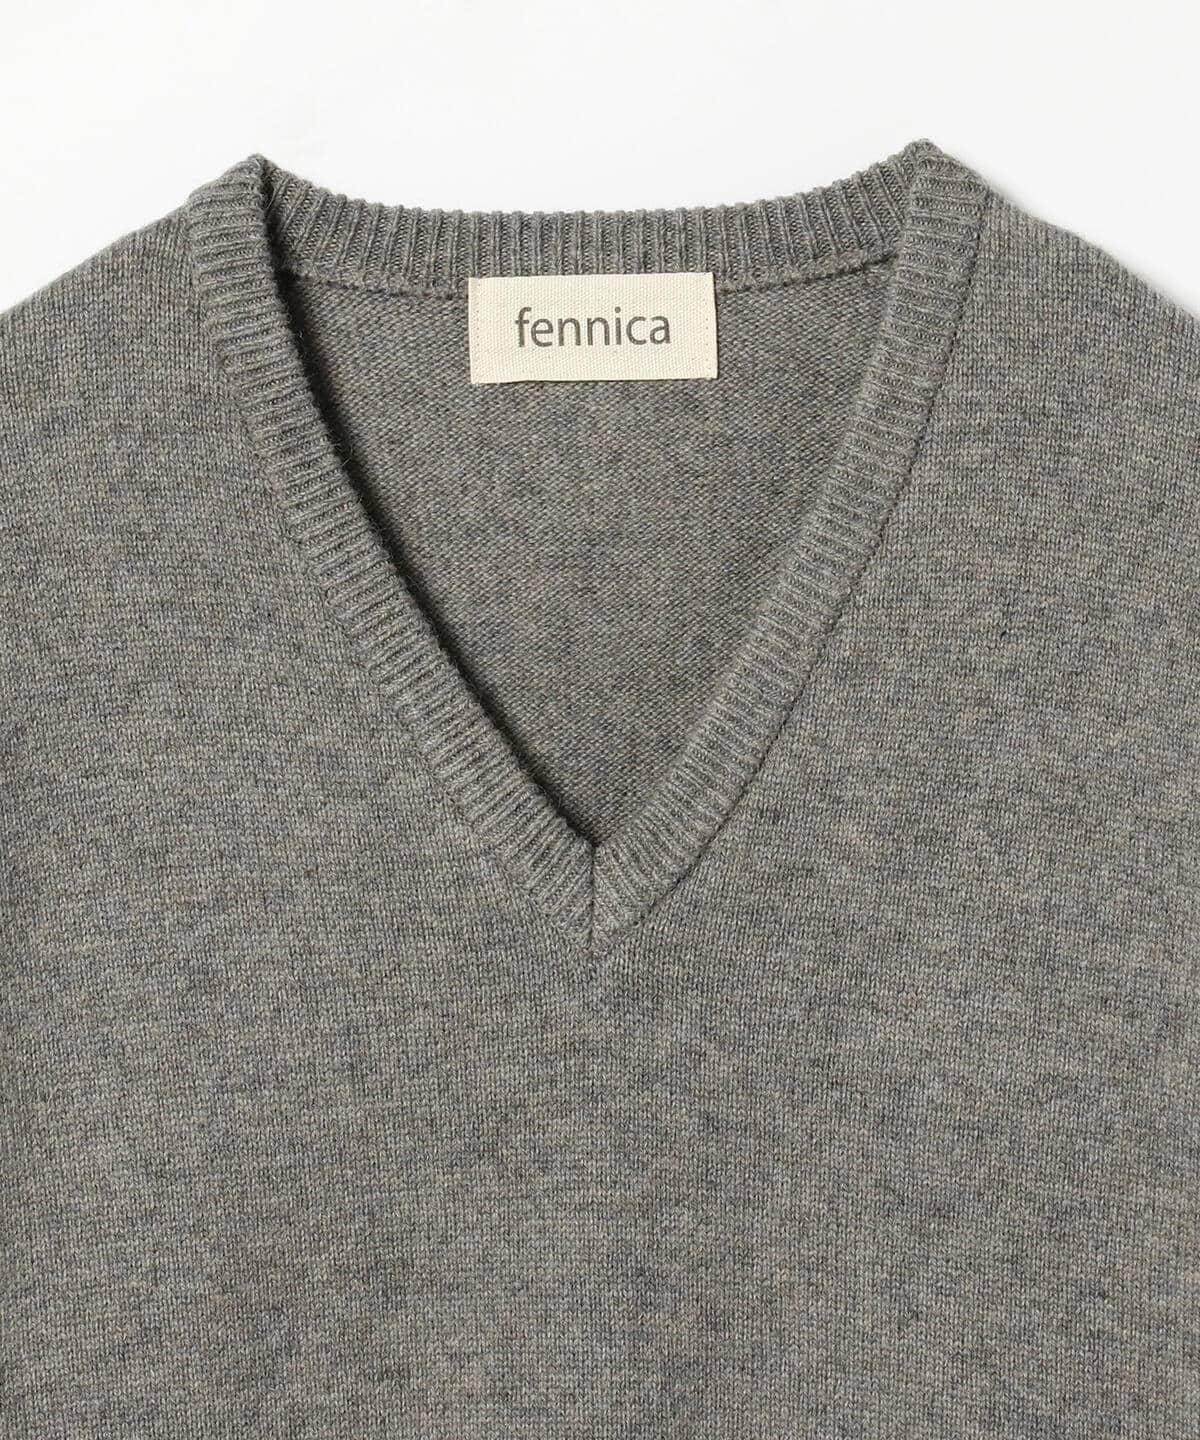 fennica（フェニカ）fennica / Camel Hair Sweater キャメルヘア